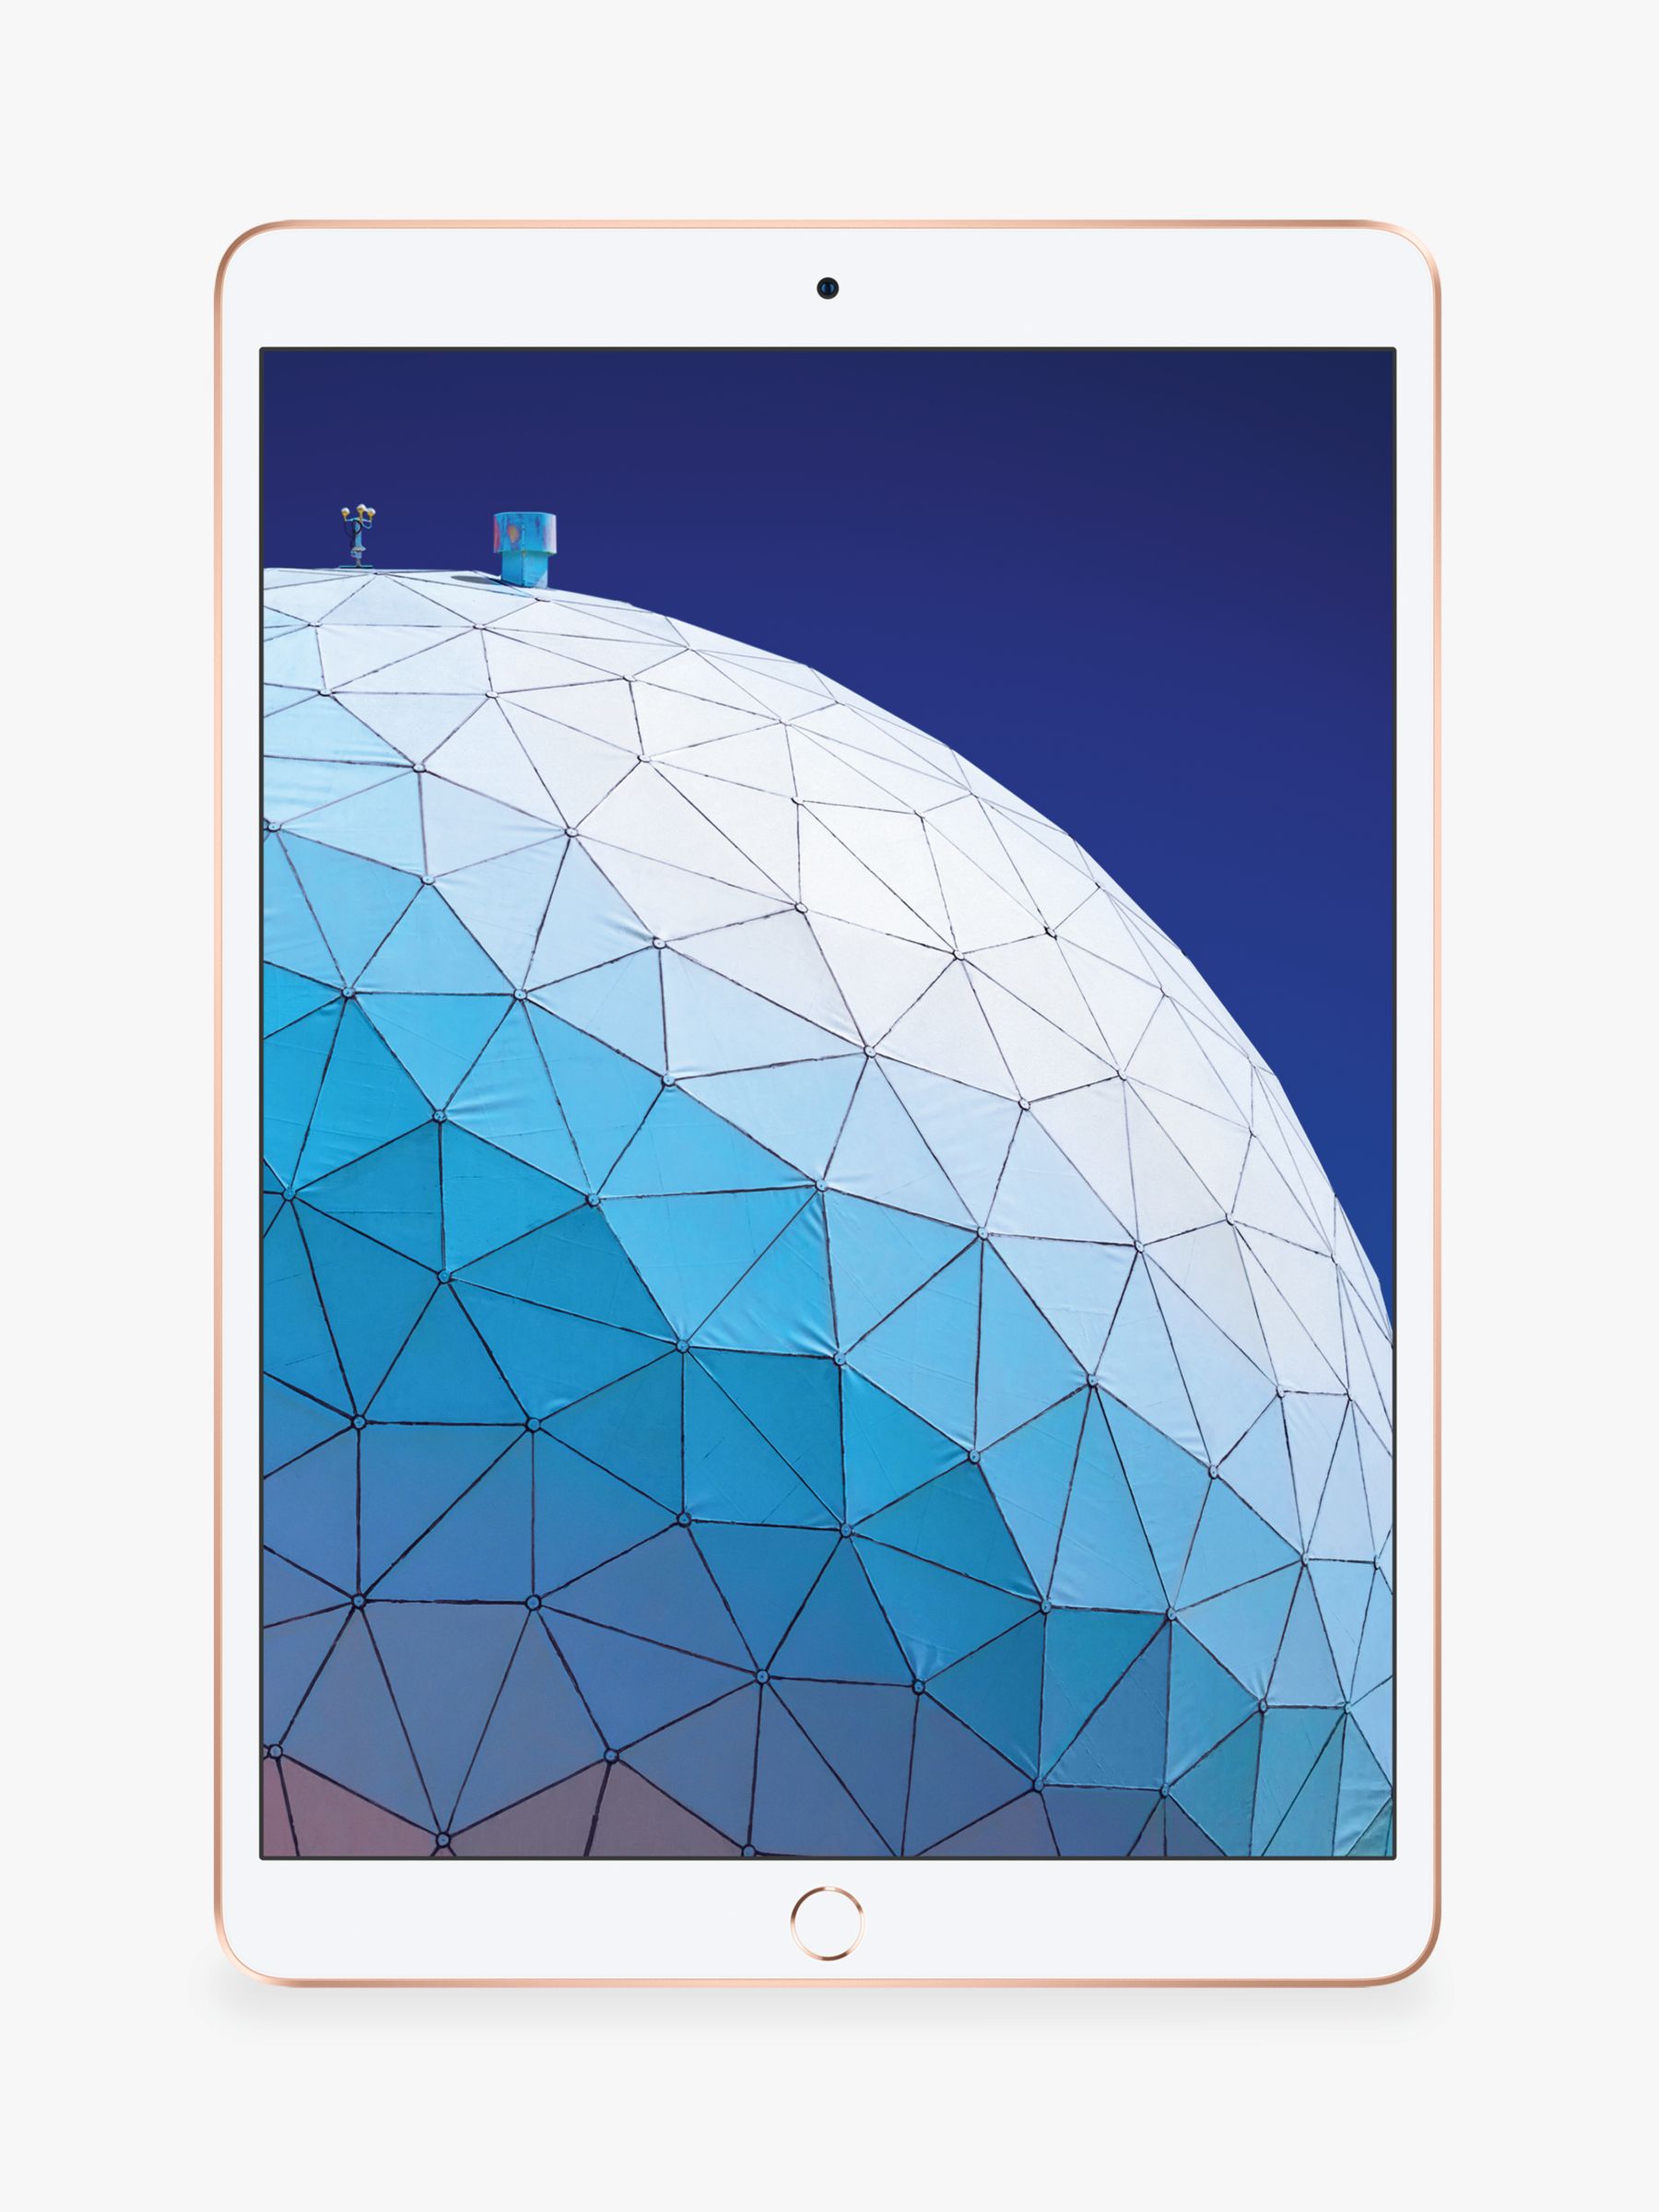 2019 Apple iPad Air 10 5 A12 Bionic iOS Wi Fi 64GB at 